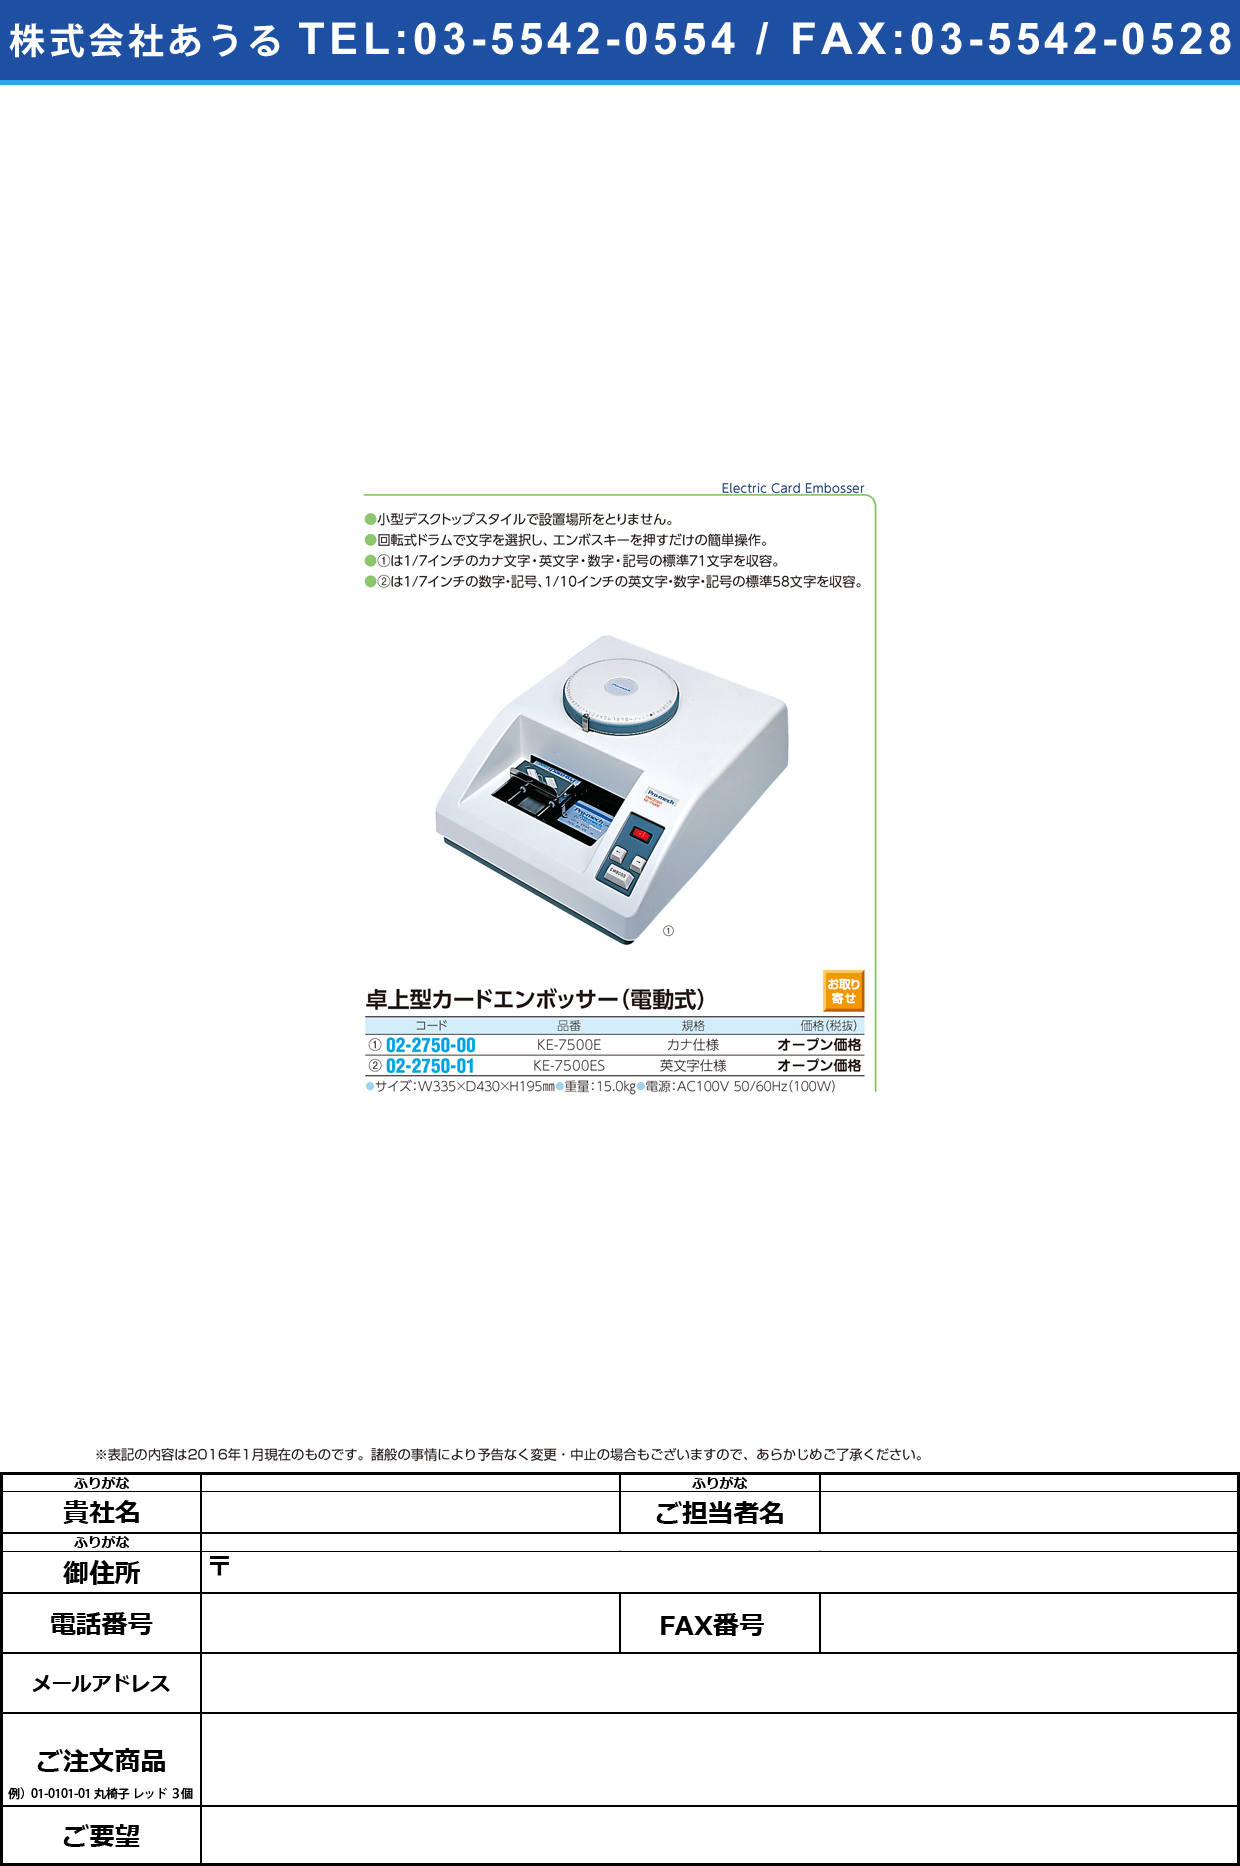 (02-2750-01)卓上型カードエンボッサー（電動式） ﾀｸｼﾞｮｳｶﾞﾀｶｰﾄﾞｴﾝﾎﾞｯｻｰ KE-7500ES(ｴｲﾓｼﾞｼﾖｳ)【1台単位】【2016年カタログ商品】